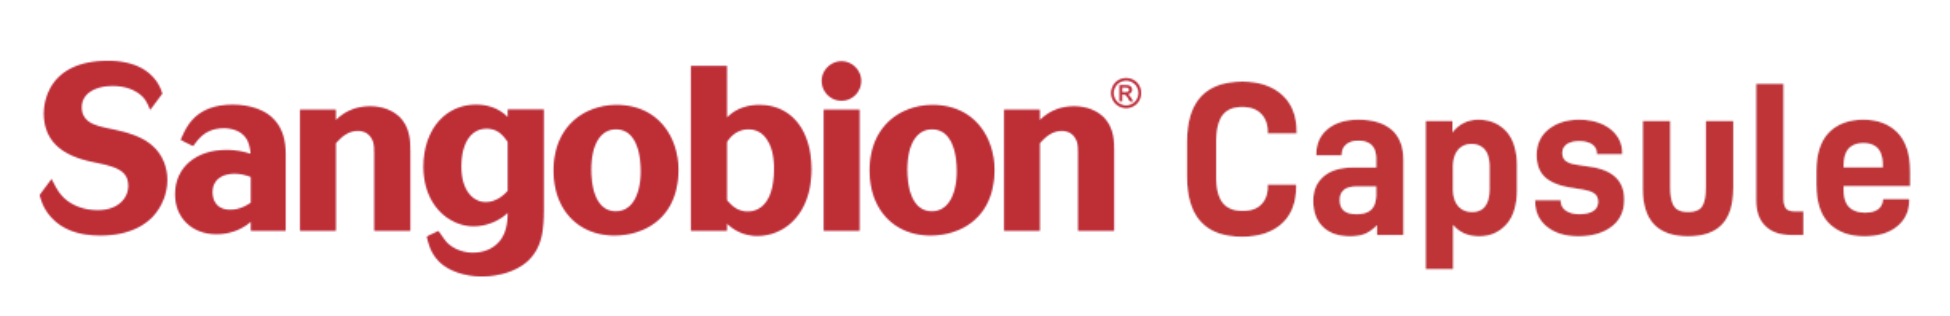 Sangobion logo